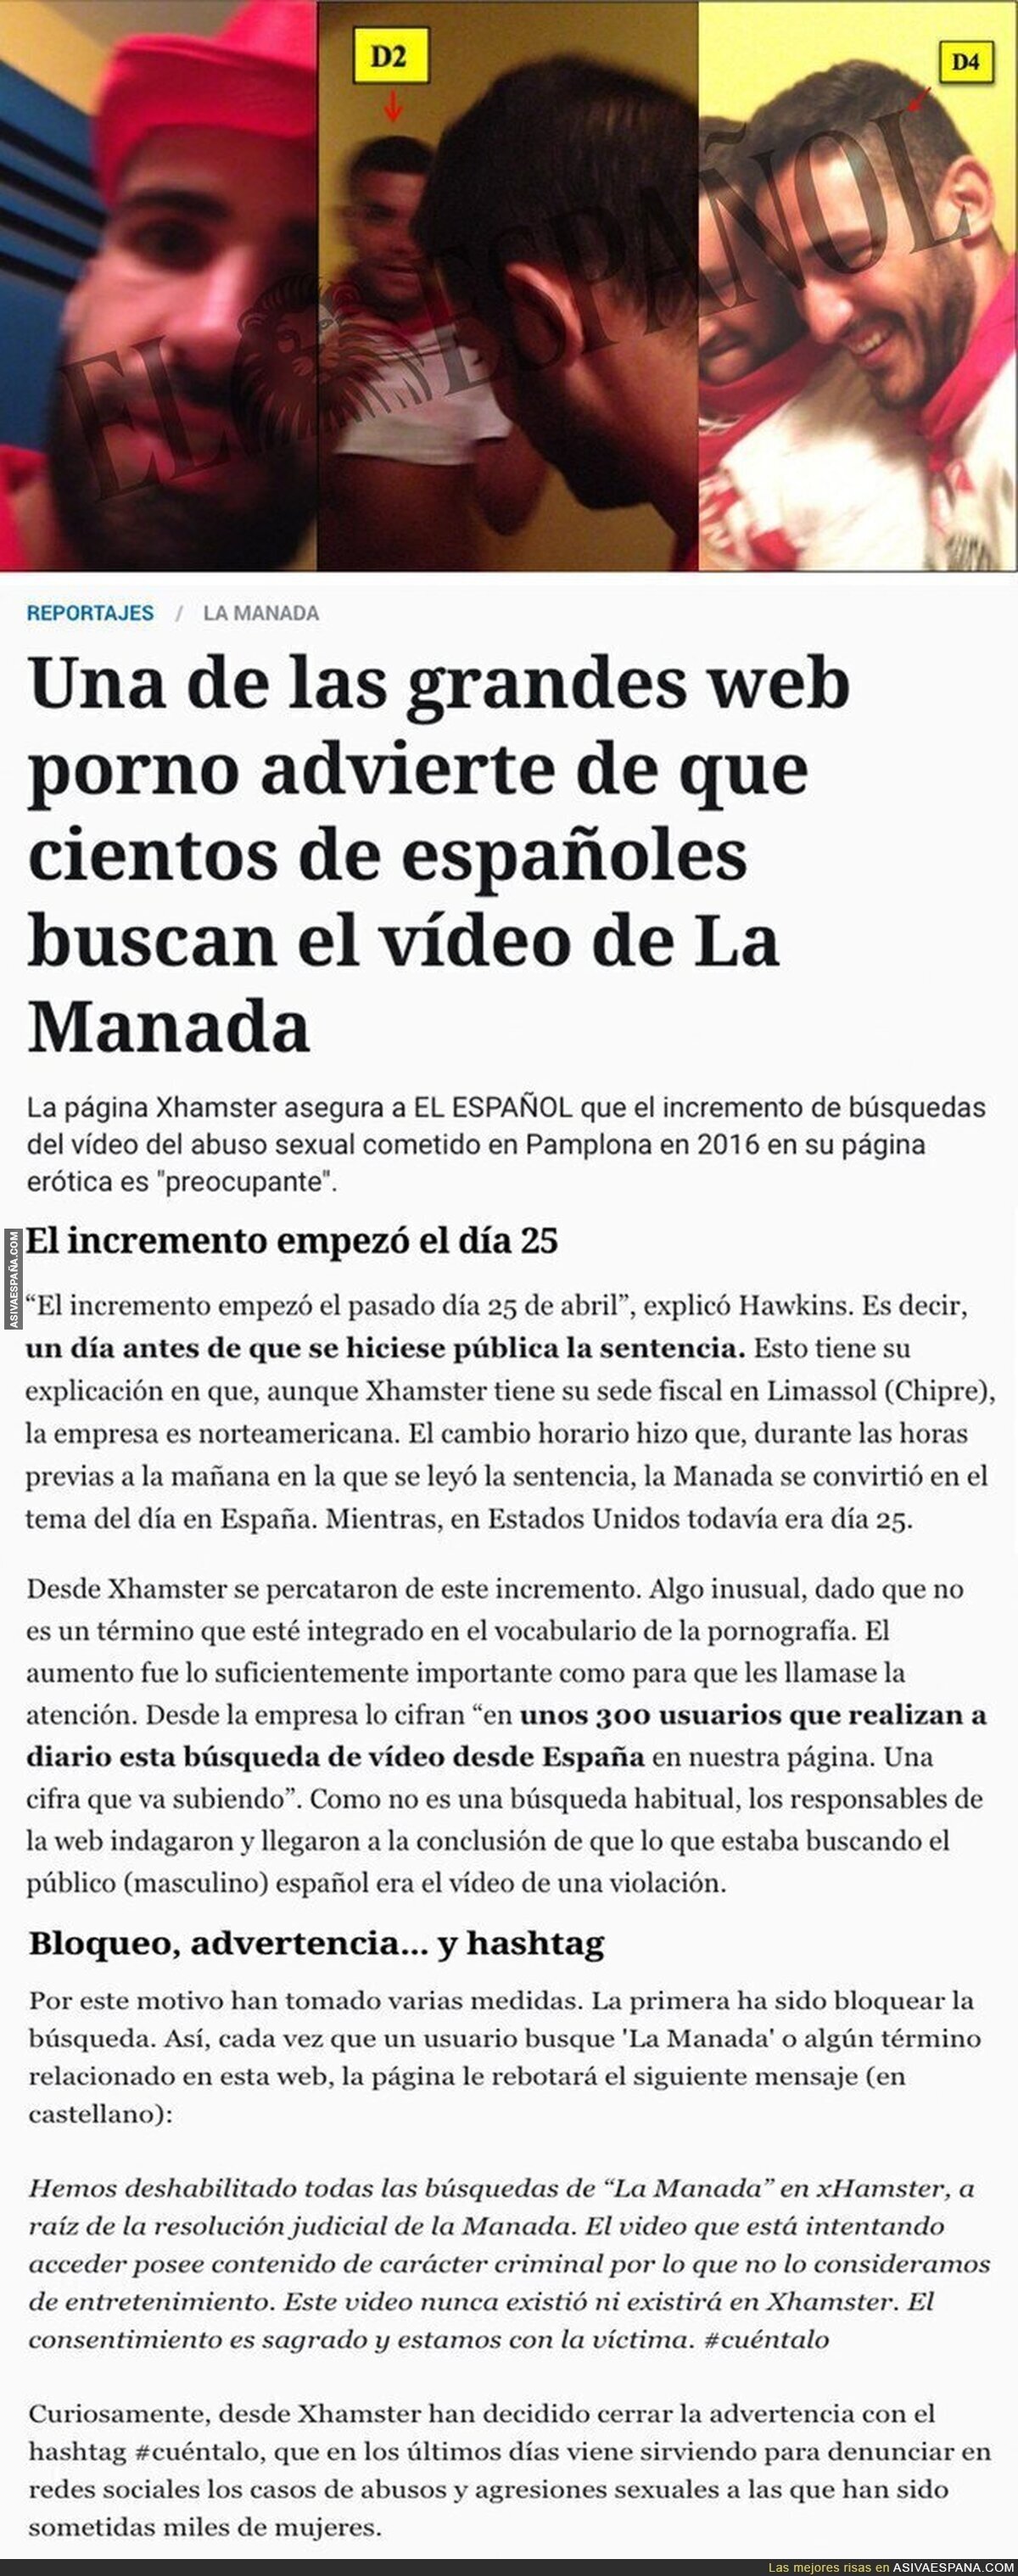 La web para adultos 'Xhamster' ha lanzado este comunicado sobre el vídeo de La Manada abusando de su víctima